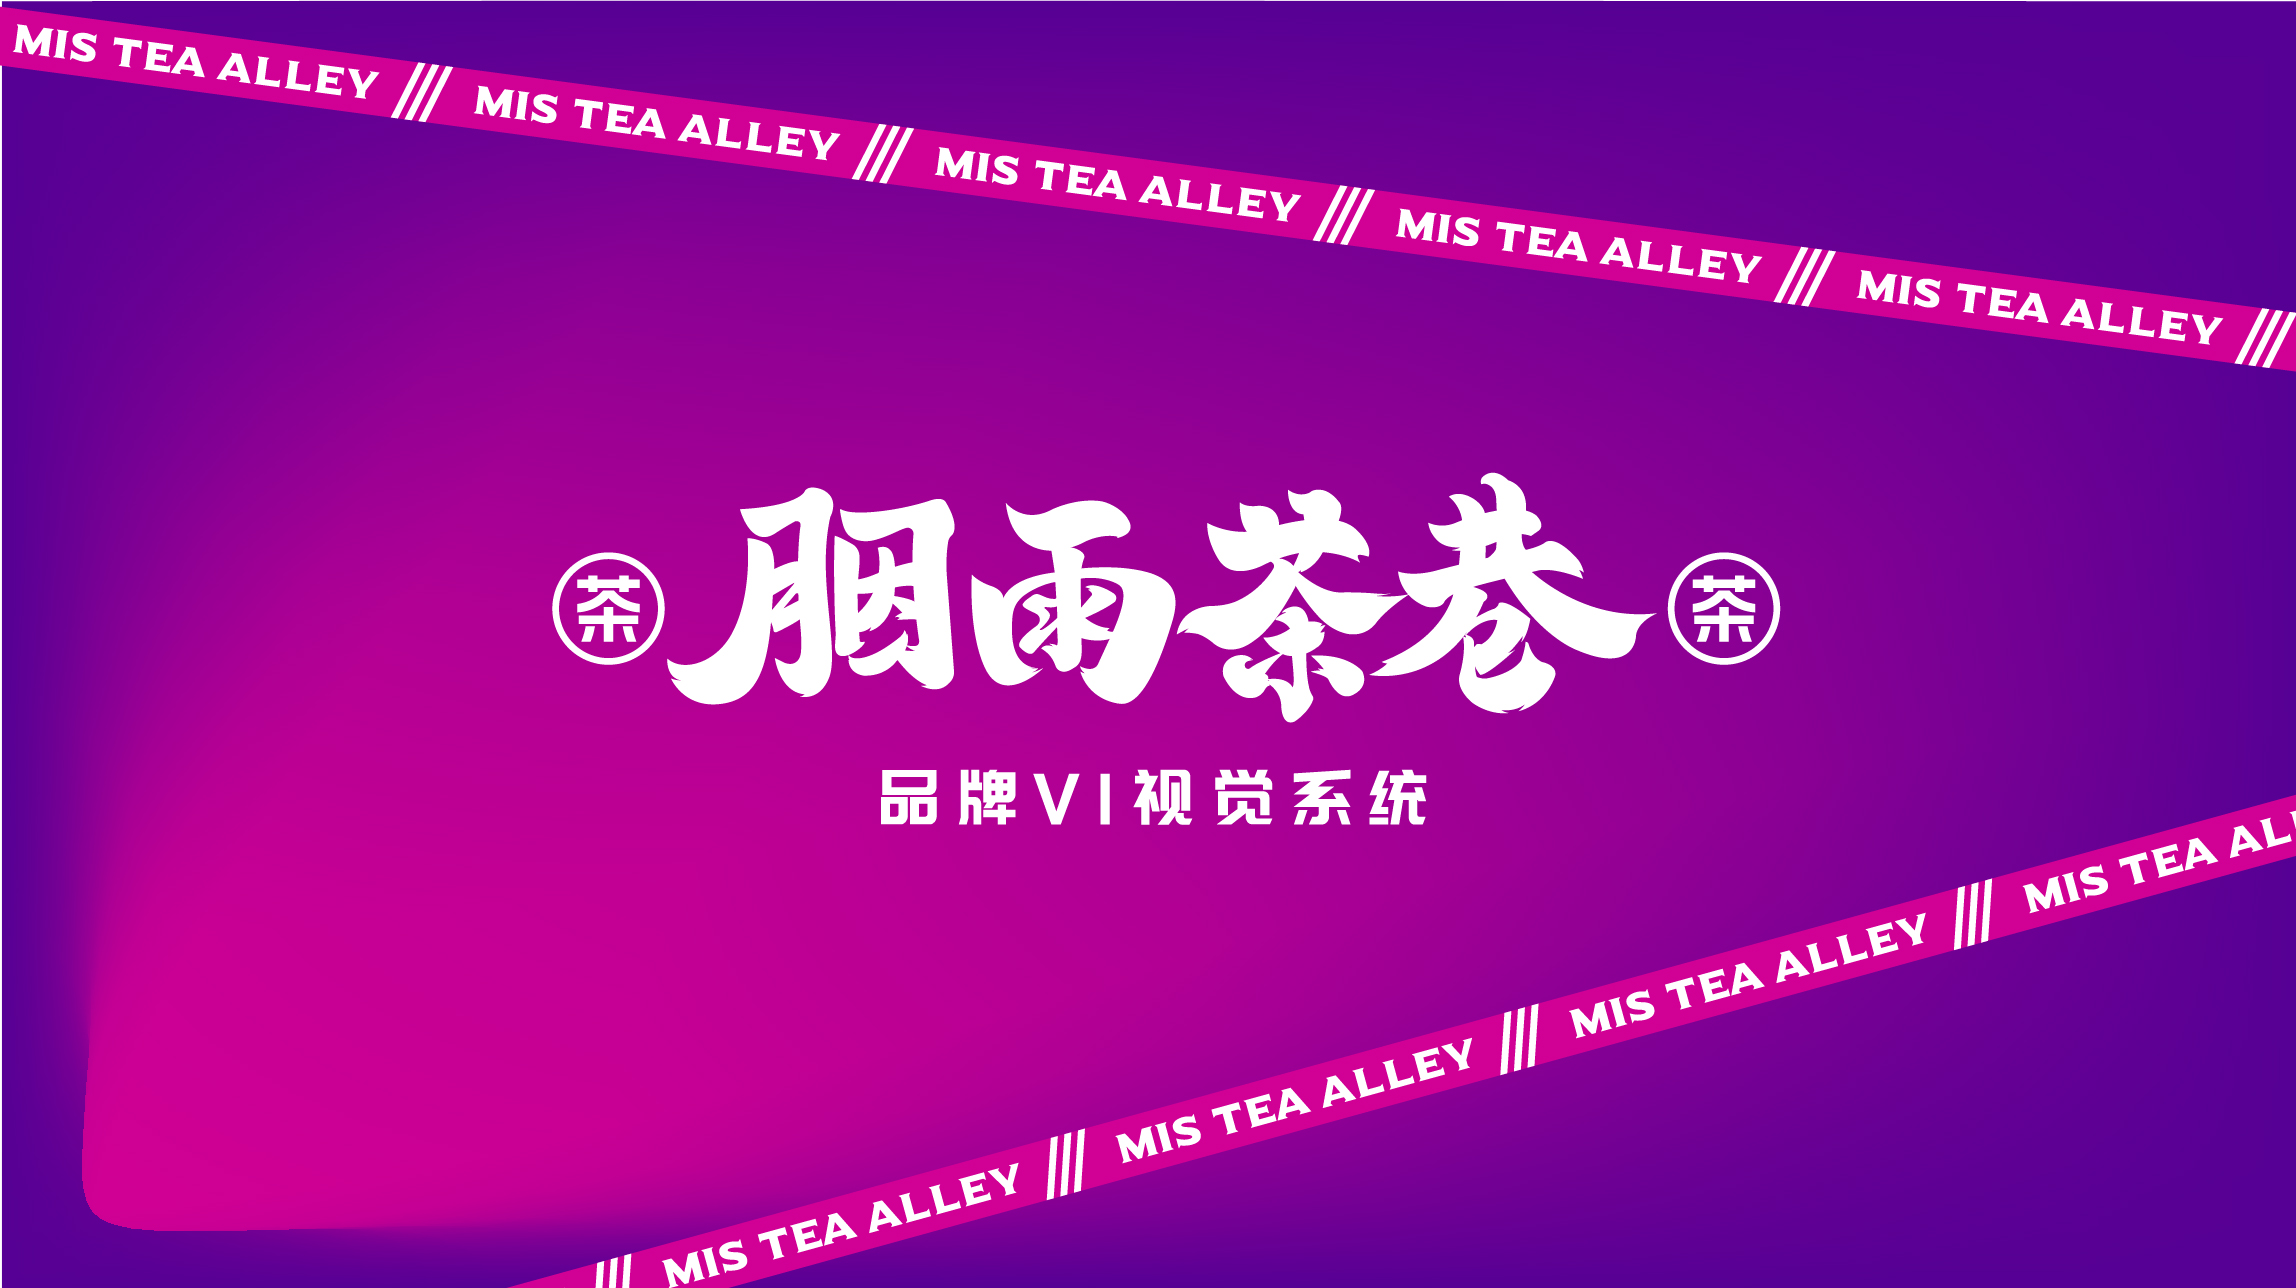 茶饮品牌胭雨茶巷品牌全案策划设计